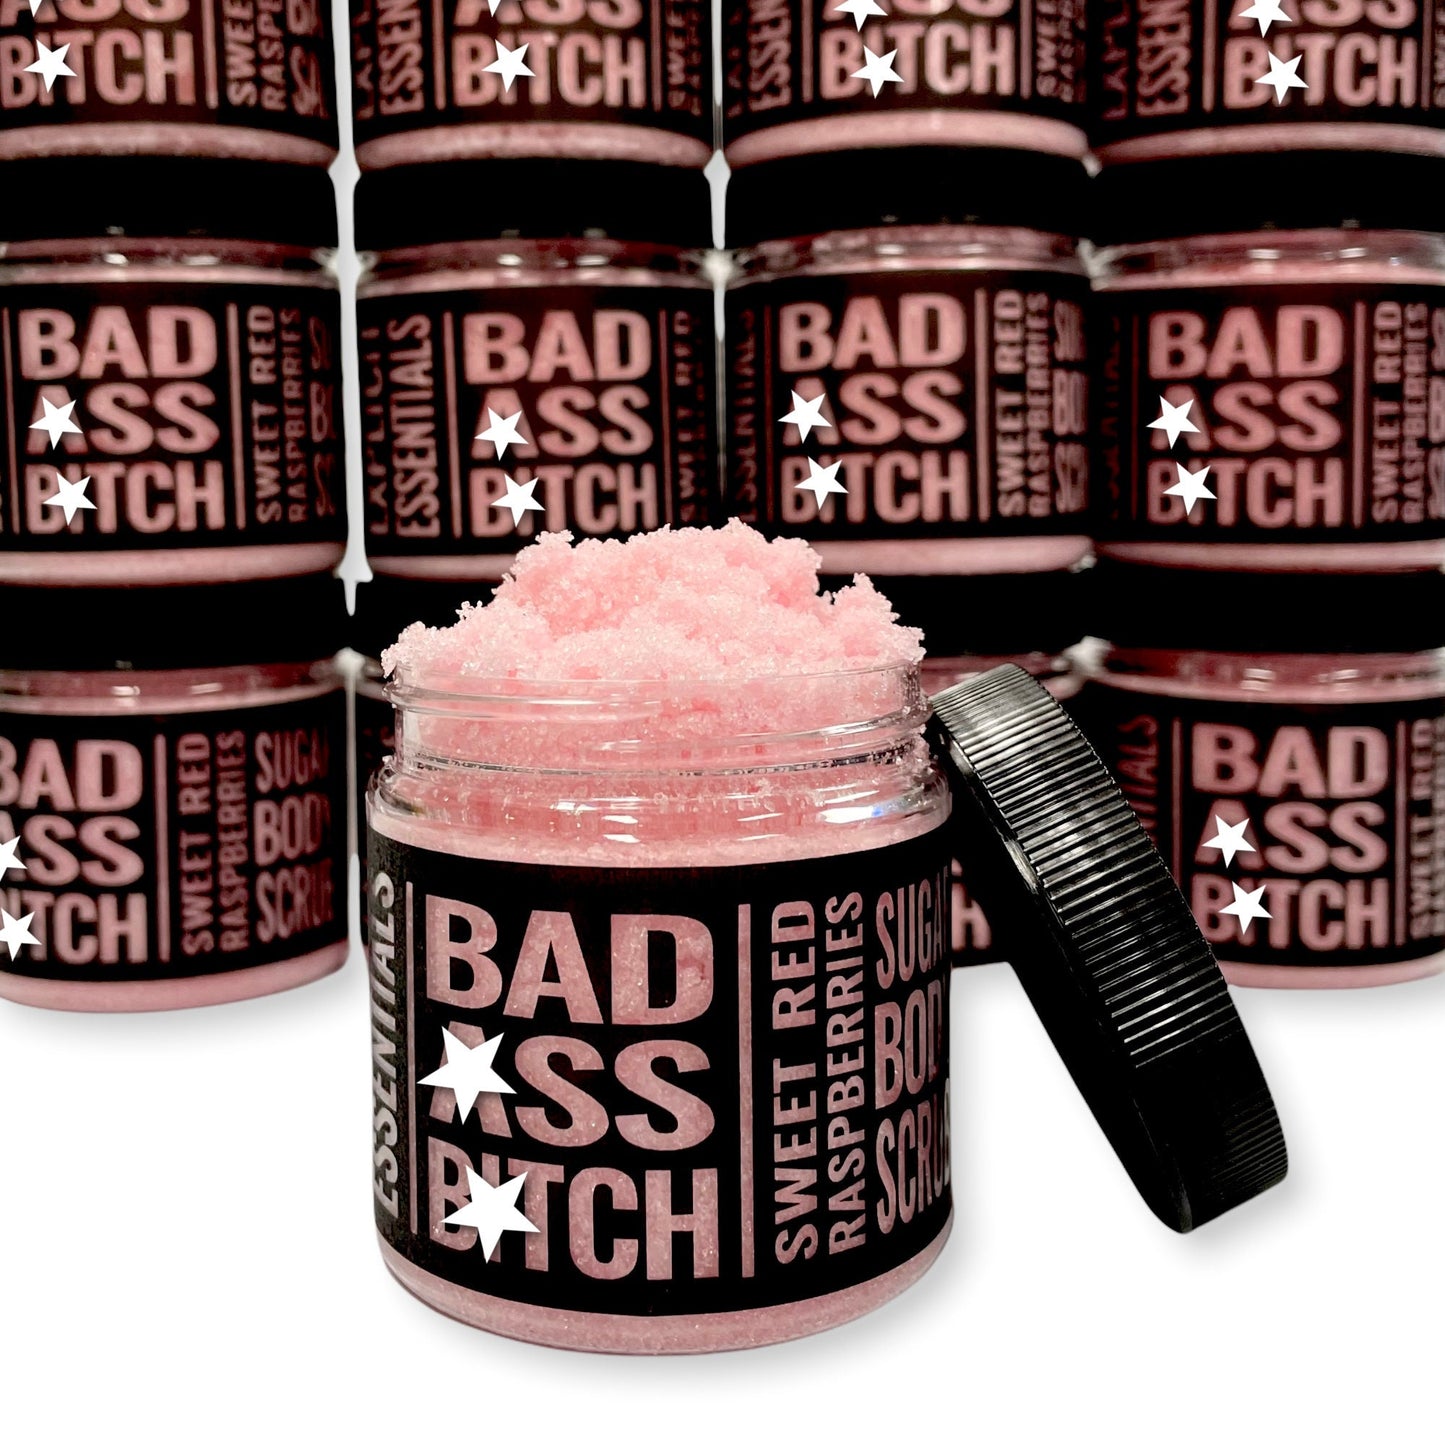 Bad Ass Bitch Sugar Scrub